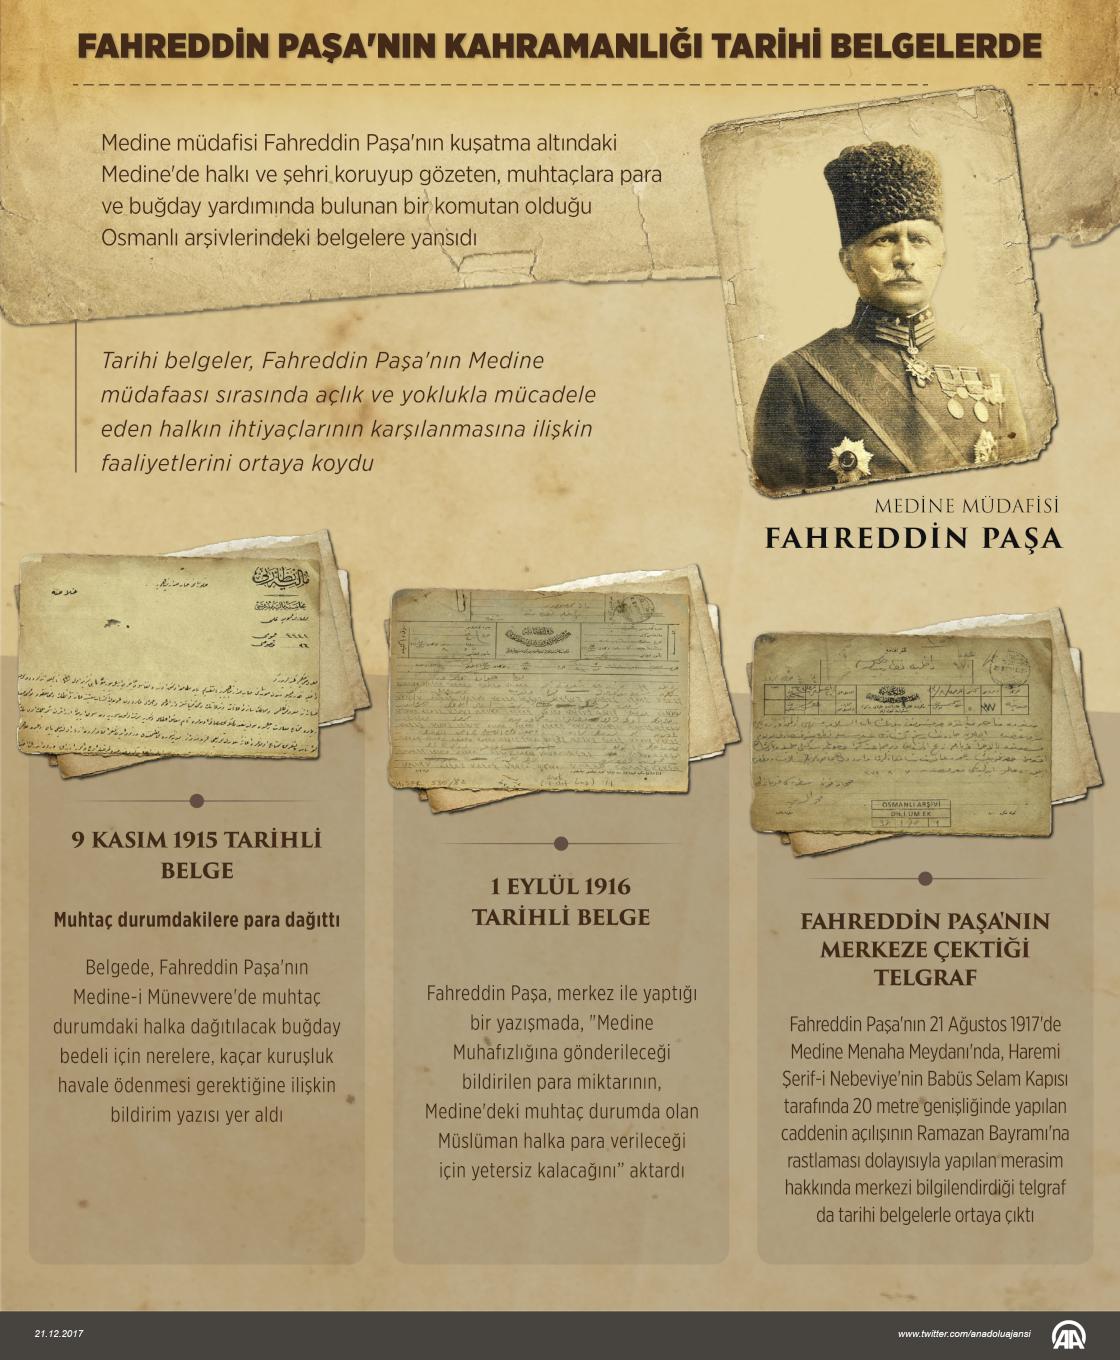 Fahreddin Paşa'nın kahramanlığı tarihi belgelerde